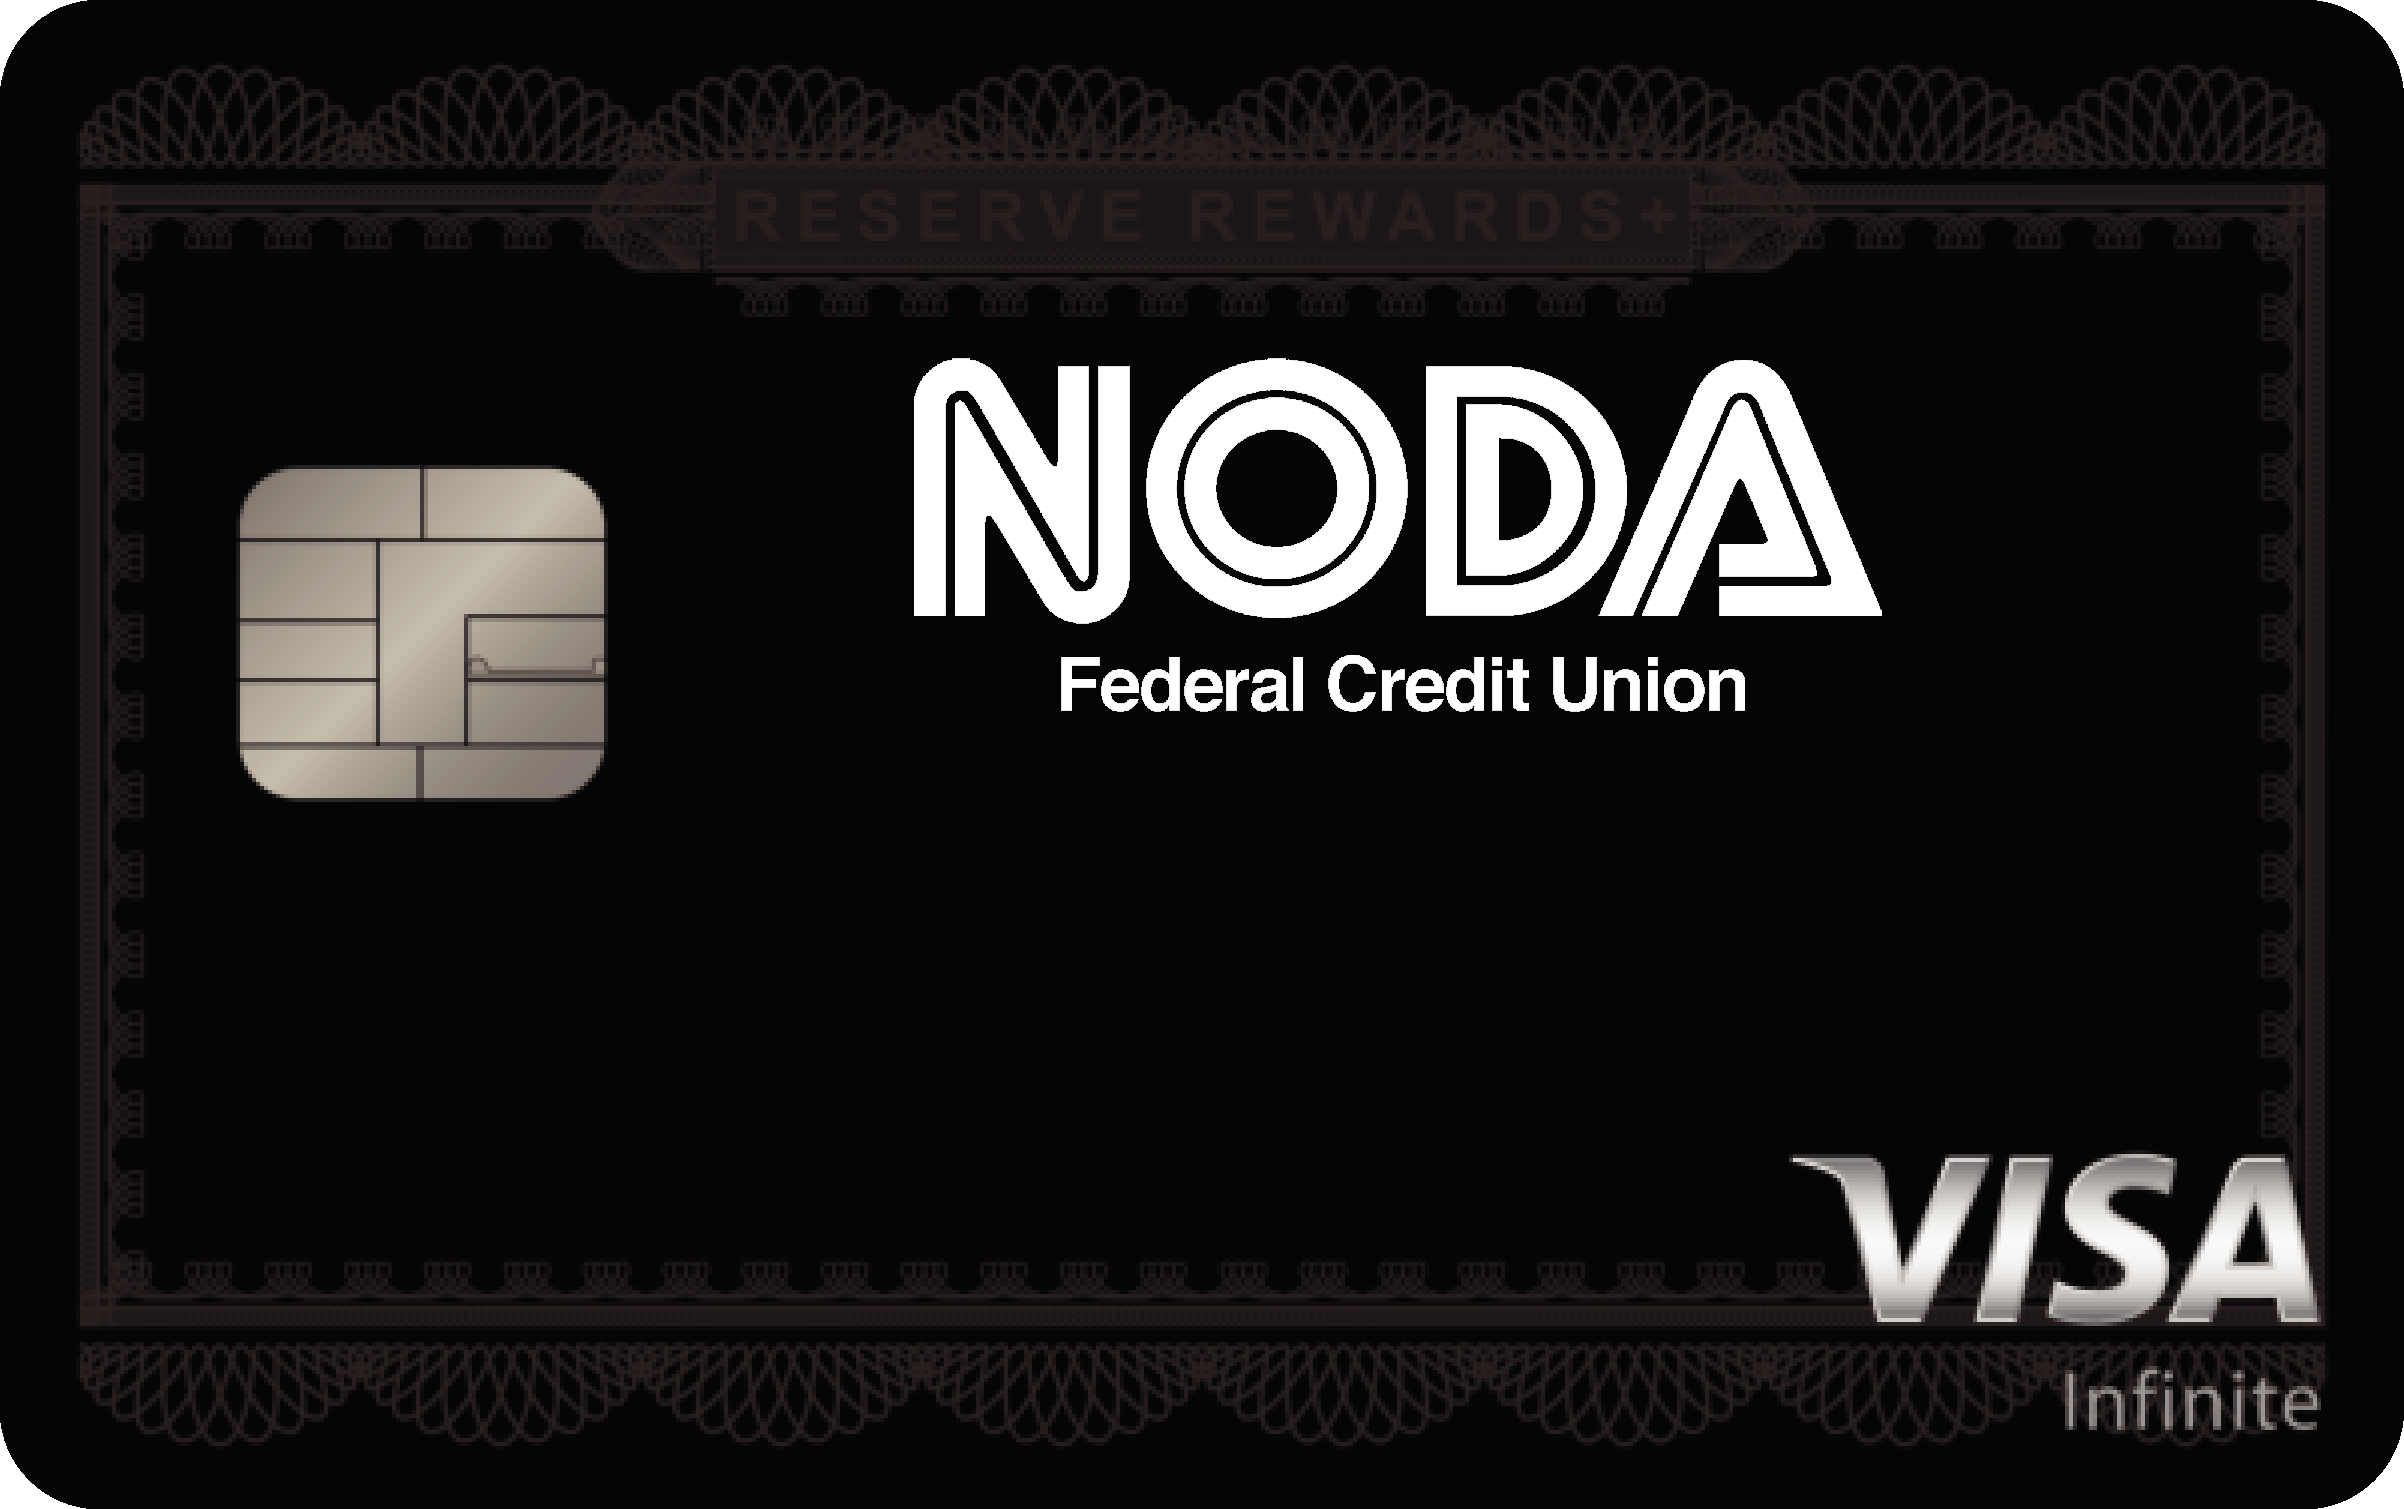 NODA Federal Credit Union Reserve Rewards+ Card